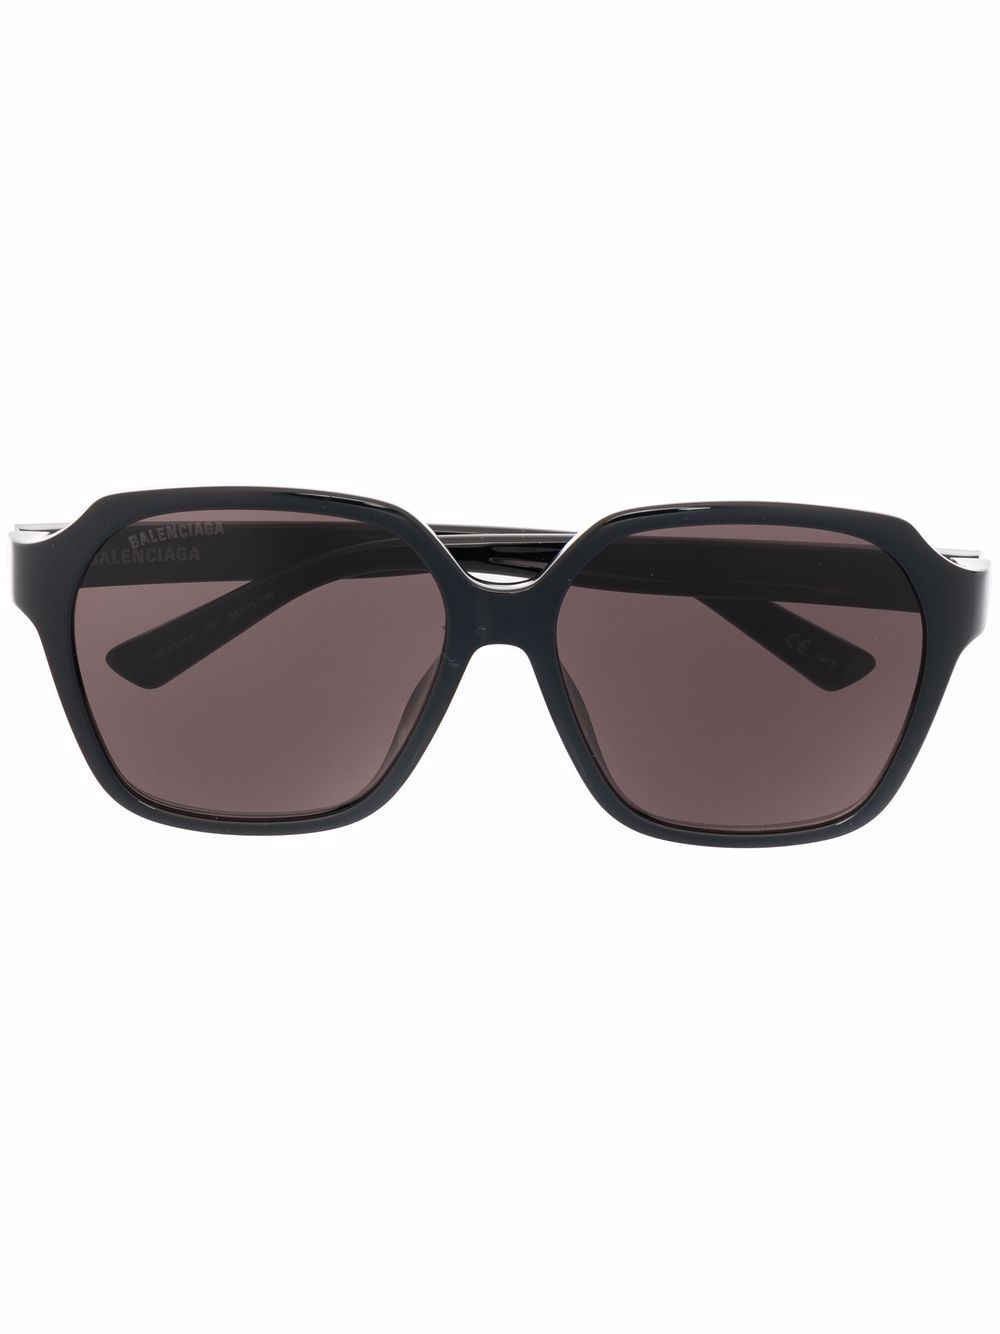 фото Balenciaga eyewear солнцезащитные очки в геометричной оправе